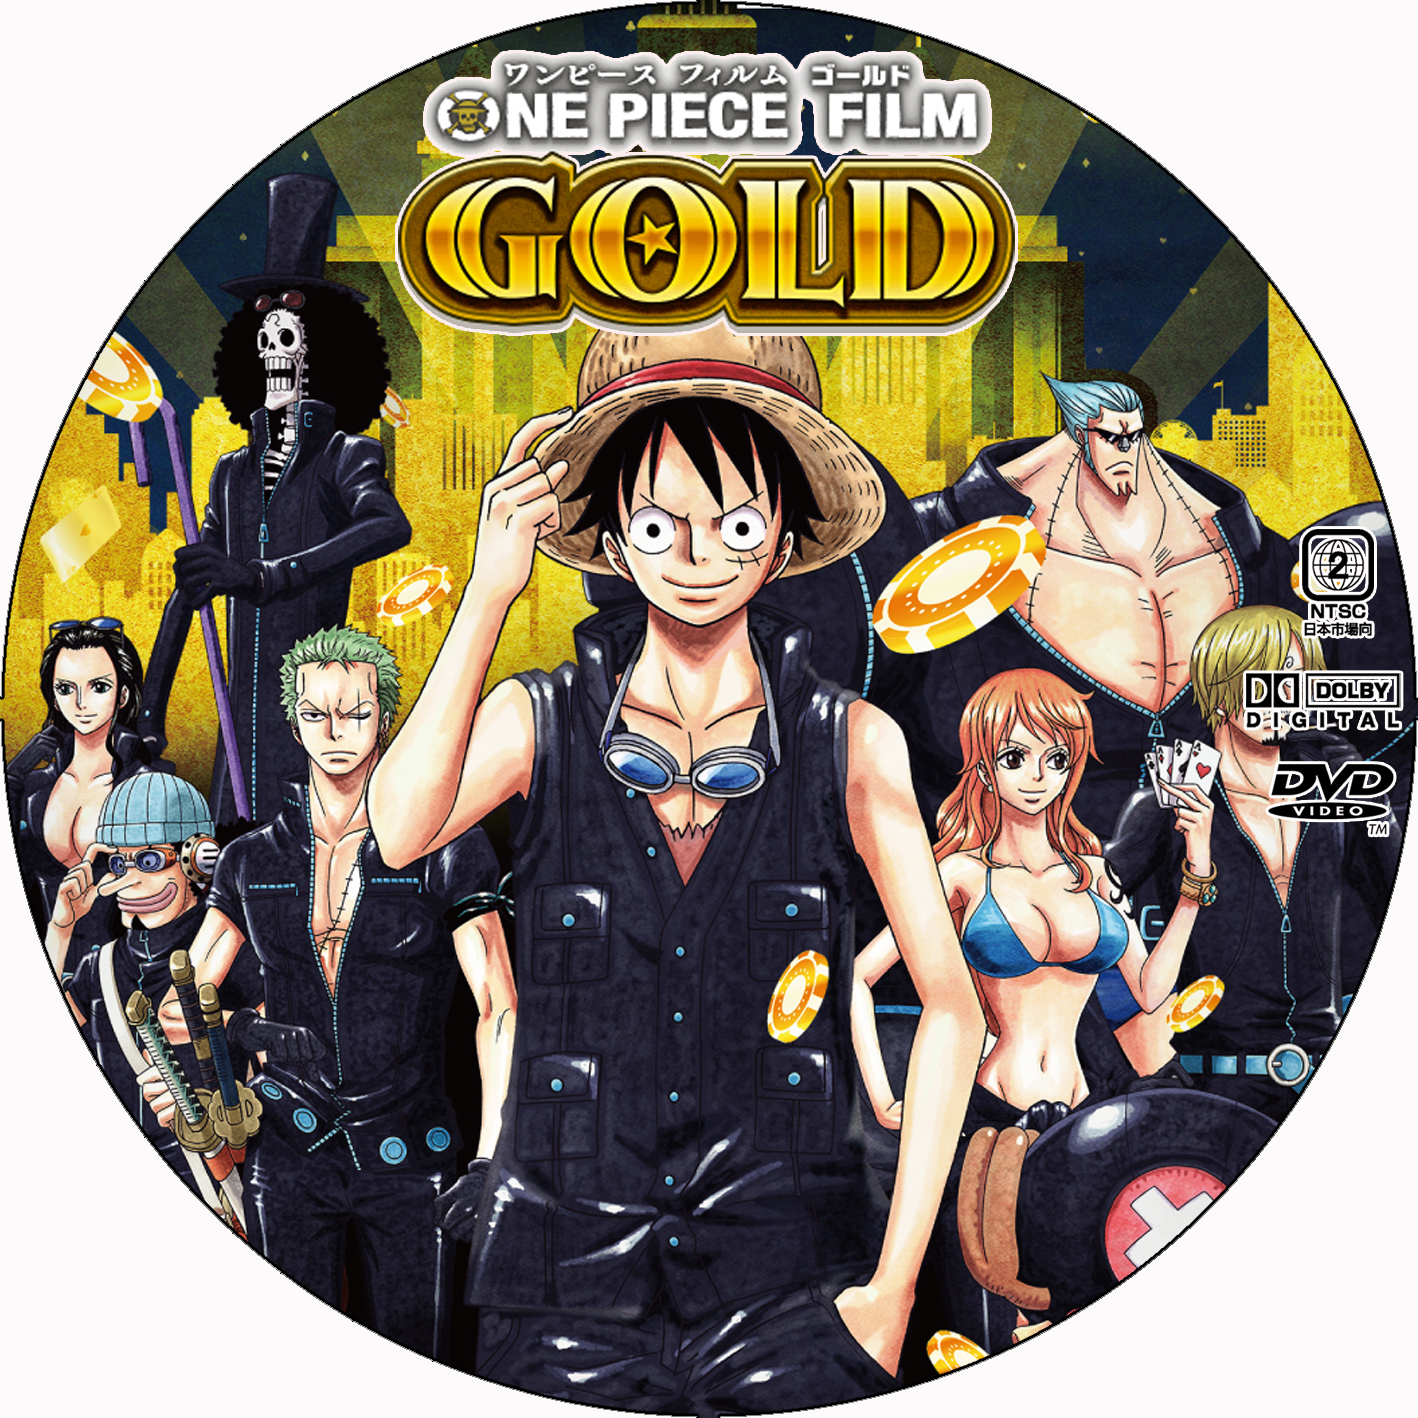 劇場版 One Piece Film Gold Dvdラベル